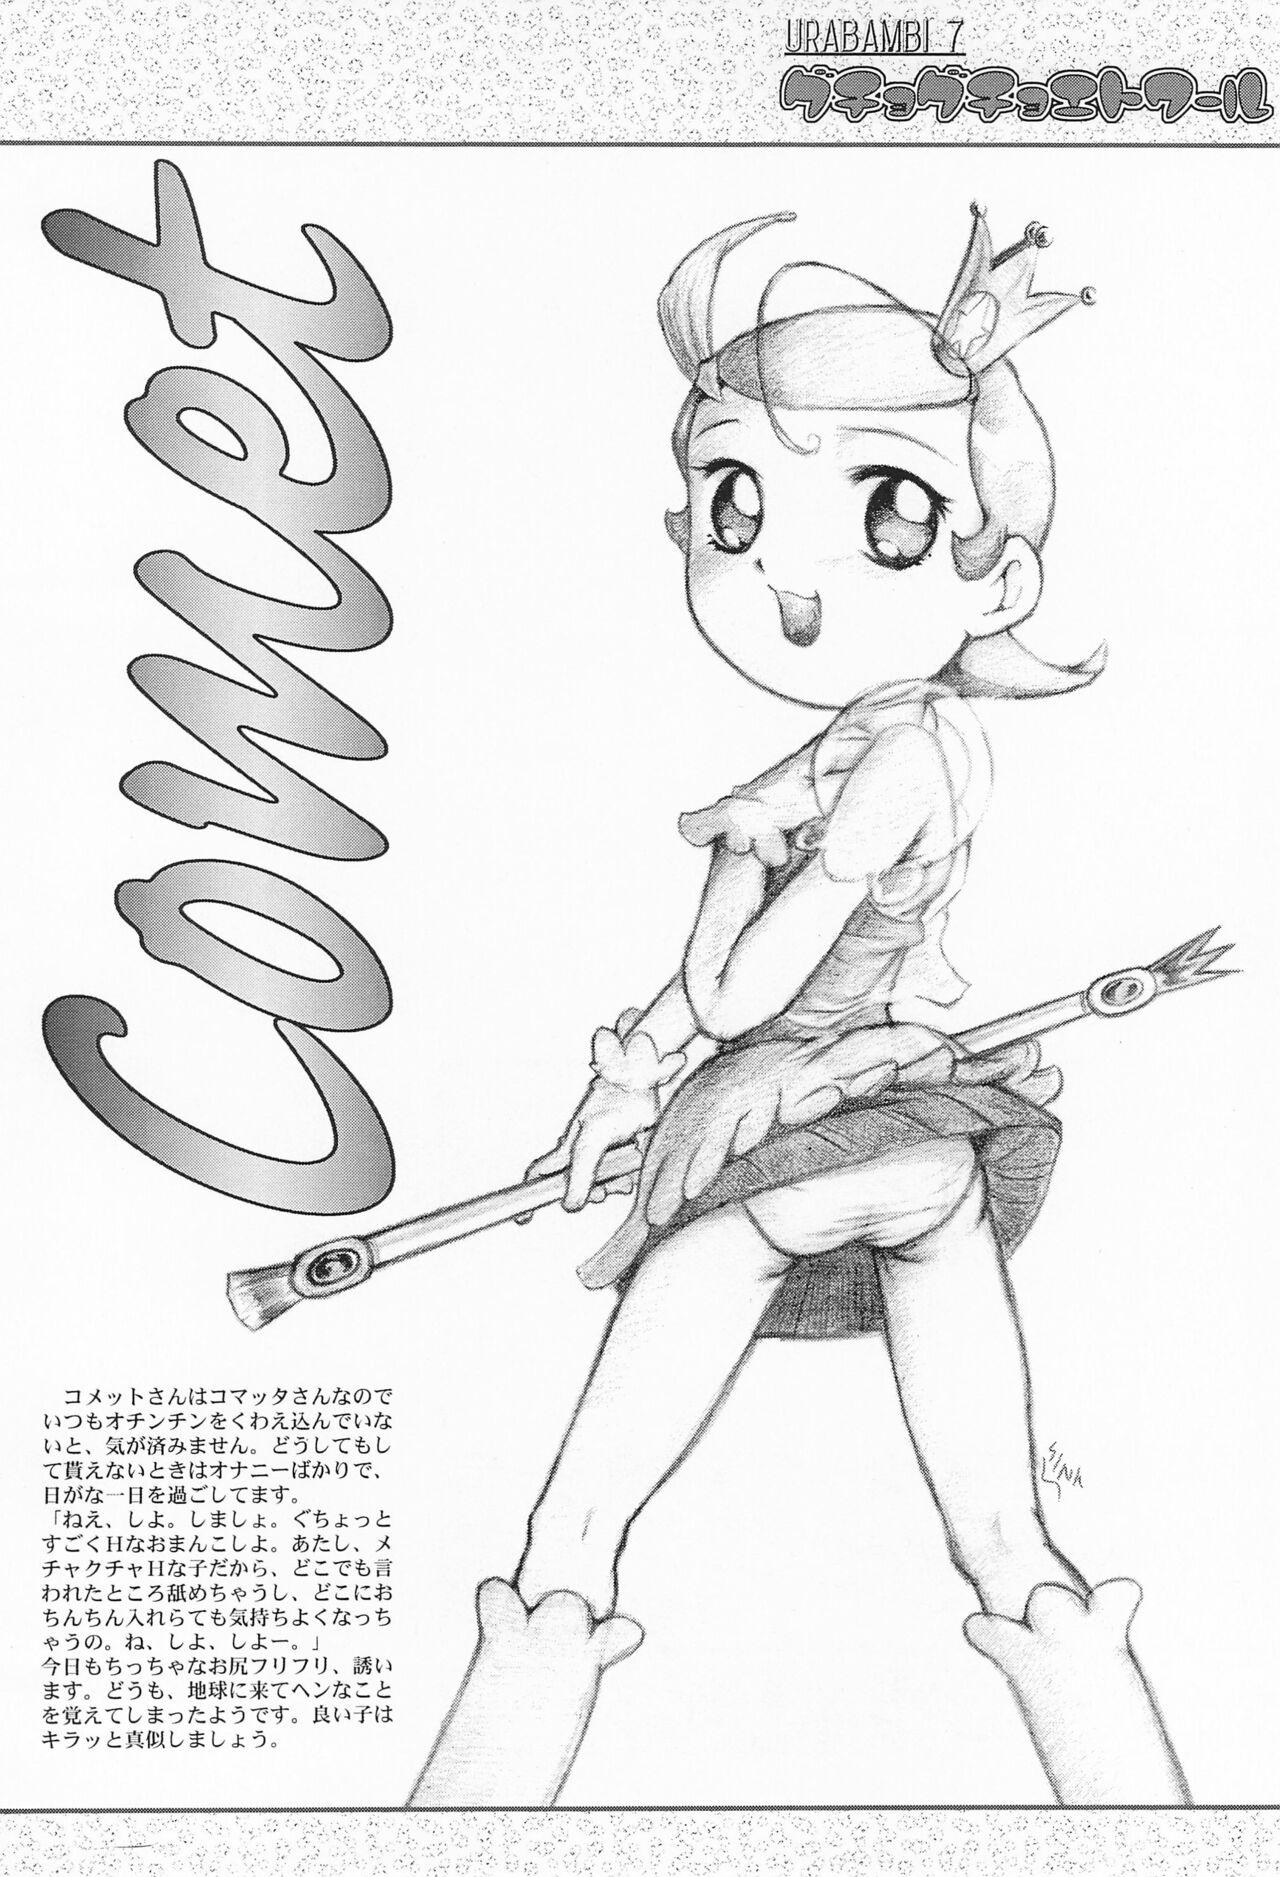 Whore Urabambi Vol. 7 - Cosmic baton girl comet san Rope - Page 4